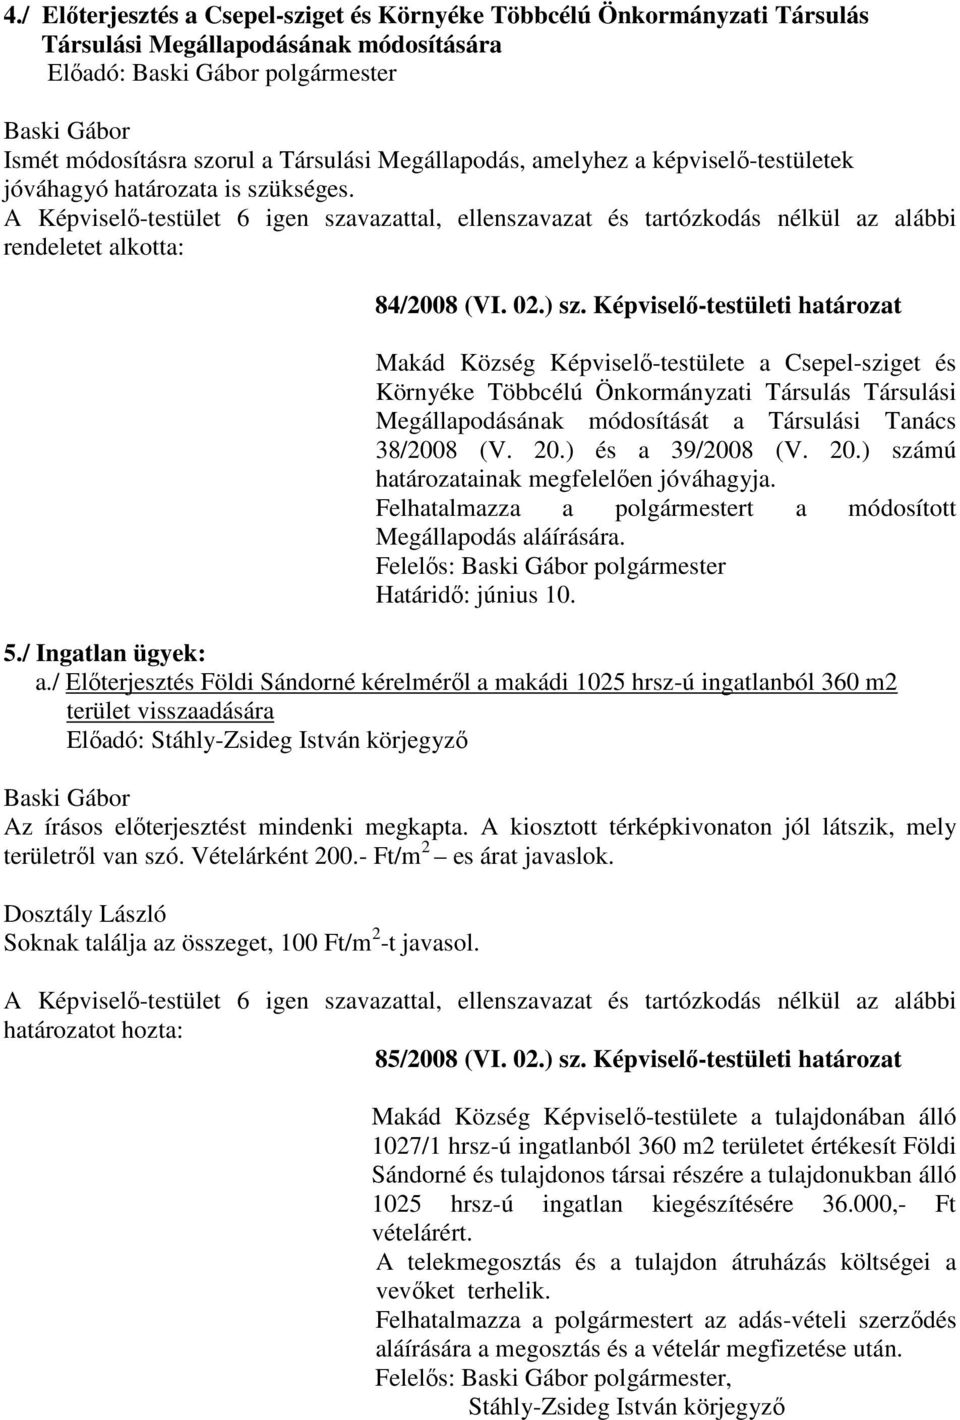 Képviselő-testületi határozat Makád Község Képviselő-testülete a Csepel-sziget és Környéke Többcélú Önkormányzati Társulás Társulási Megállapodásának módosítását a Társulási Tanács 38/2008 (V. 20.